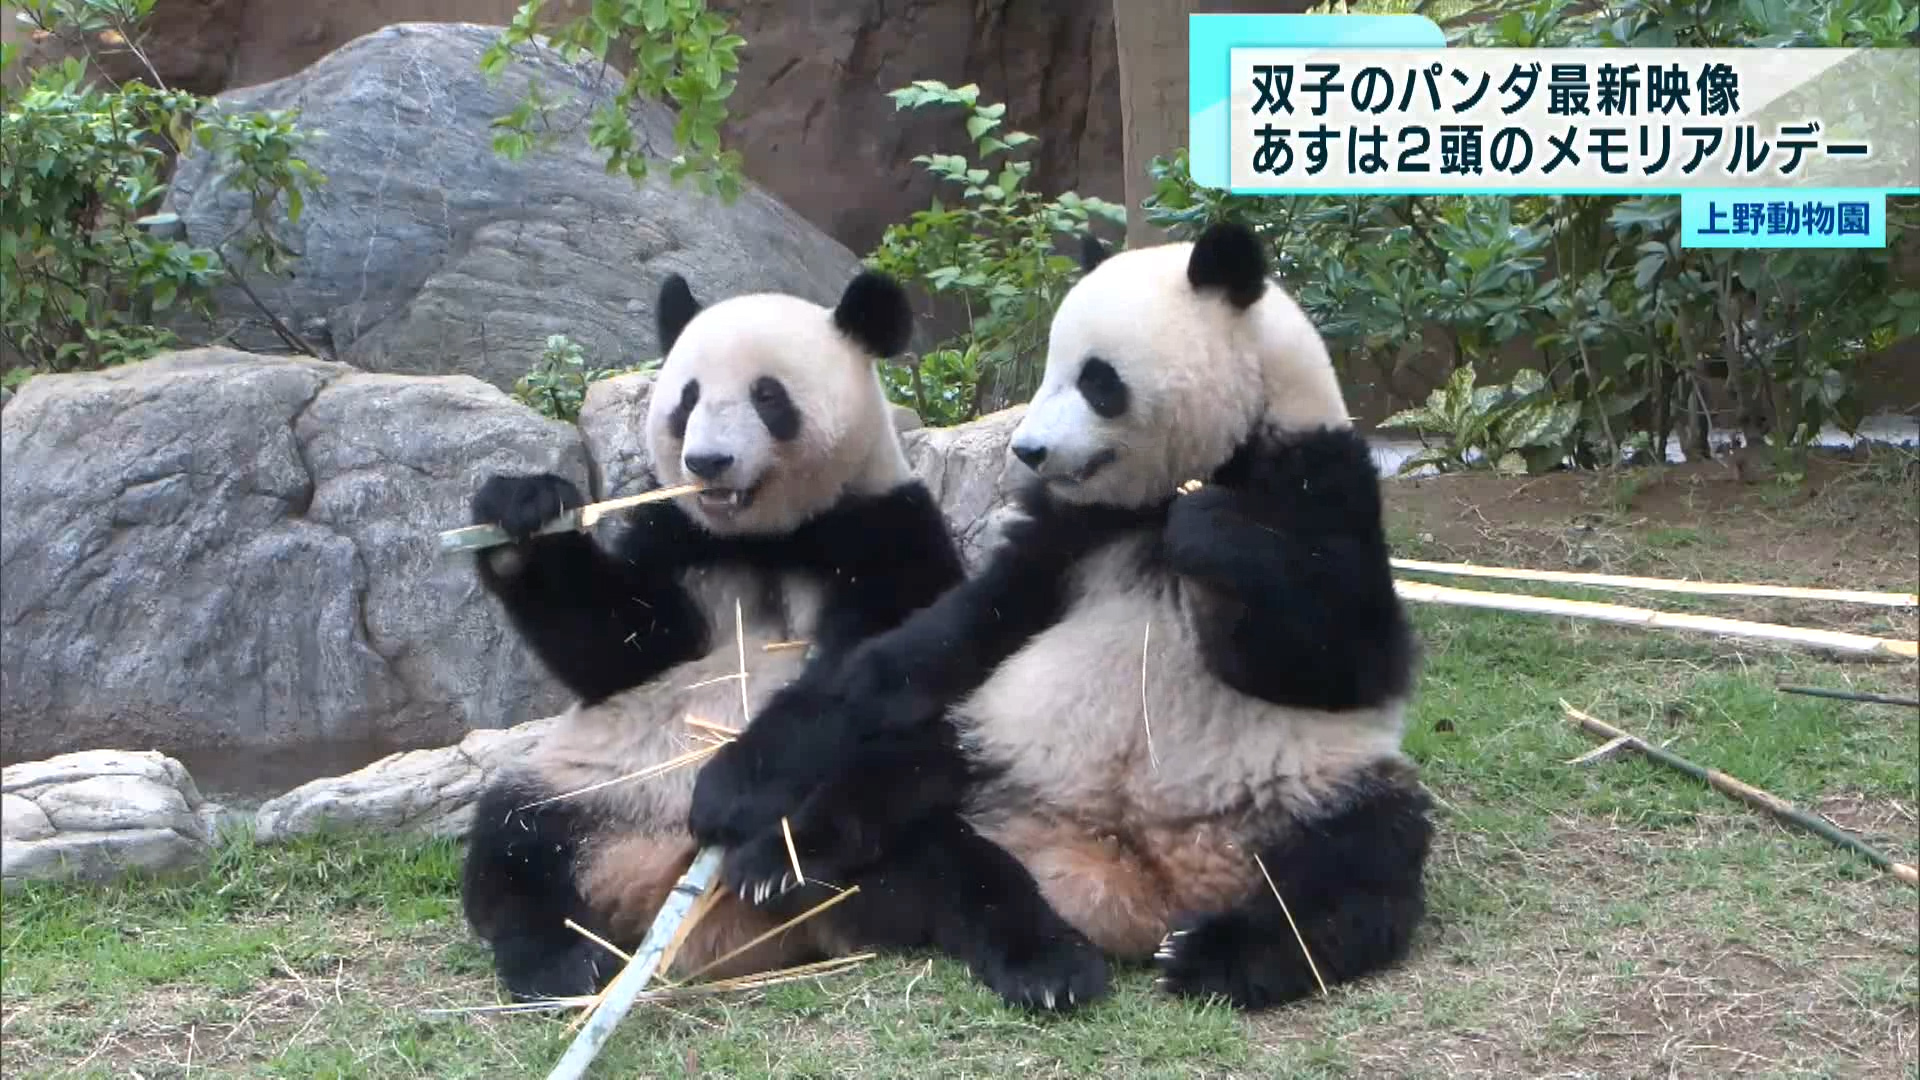 6月23日に誕生日を迎える上野動物園の人気者・双子パンダの最新映像が公開されました。地元・上野の百貨店も誕生日を記念したイベントを開催し大いに盛り上がっています。
